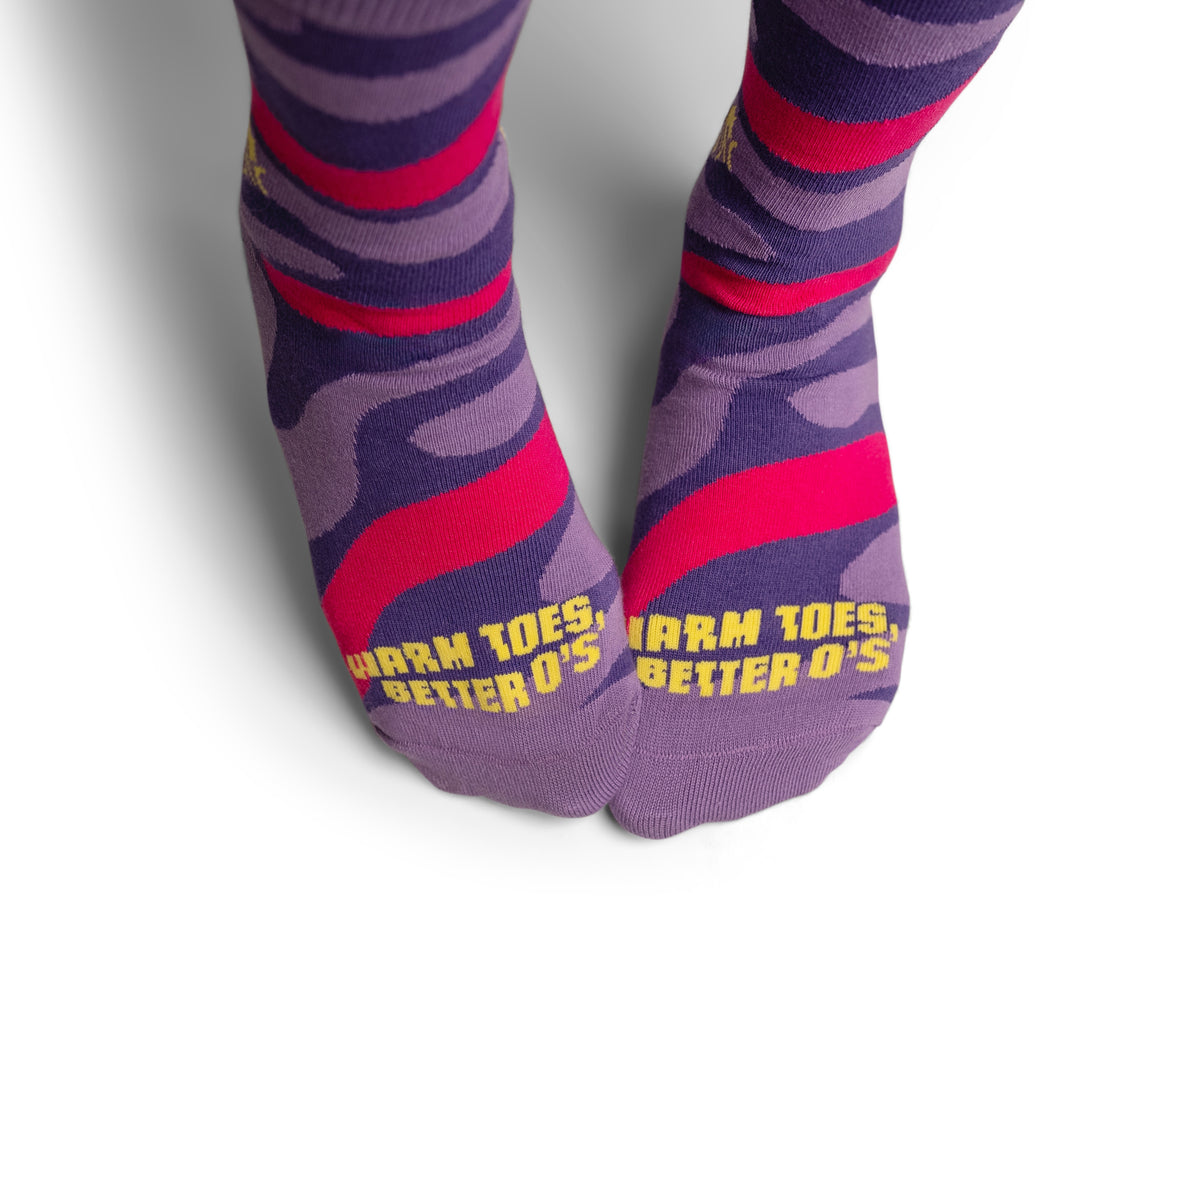 Socks for Science